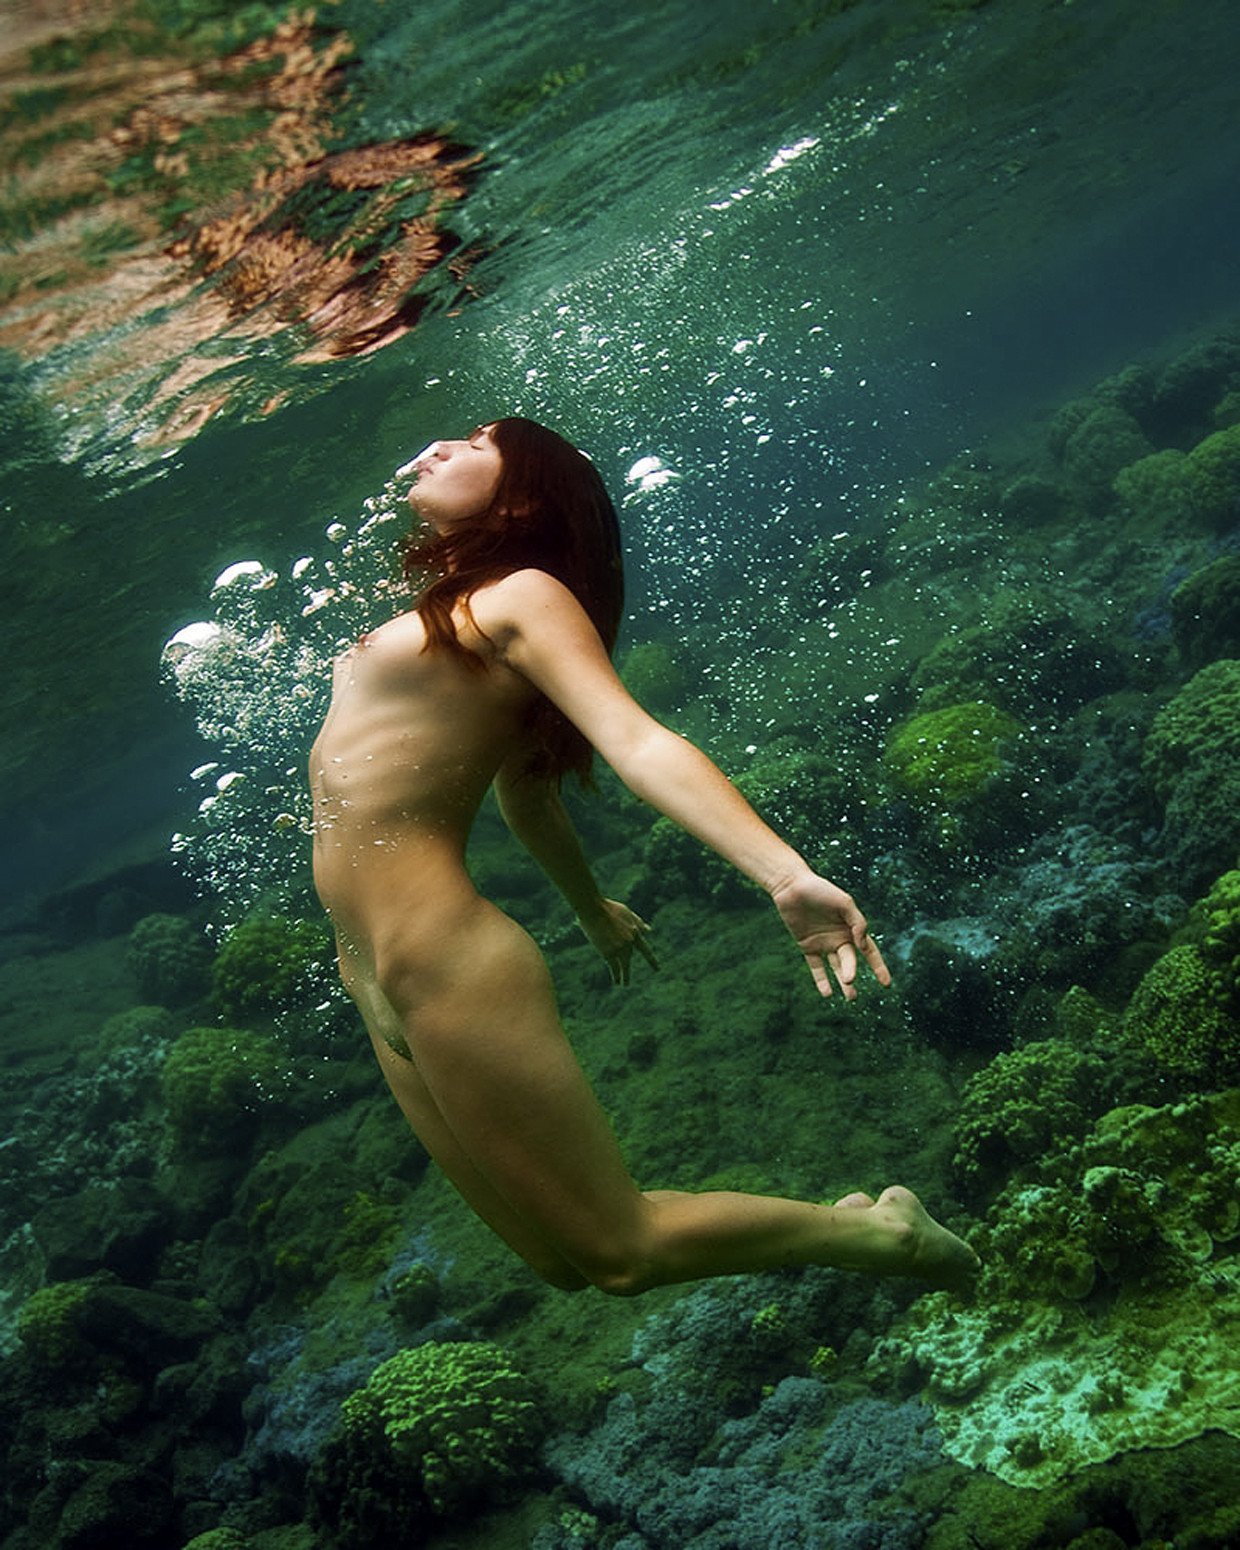 India Girl Nude Underwater - Nude Women Underwater - 66 photos